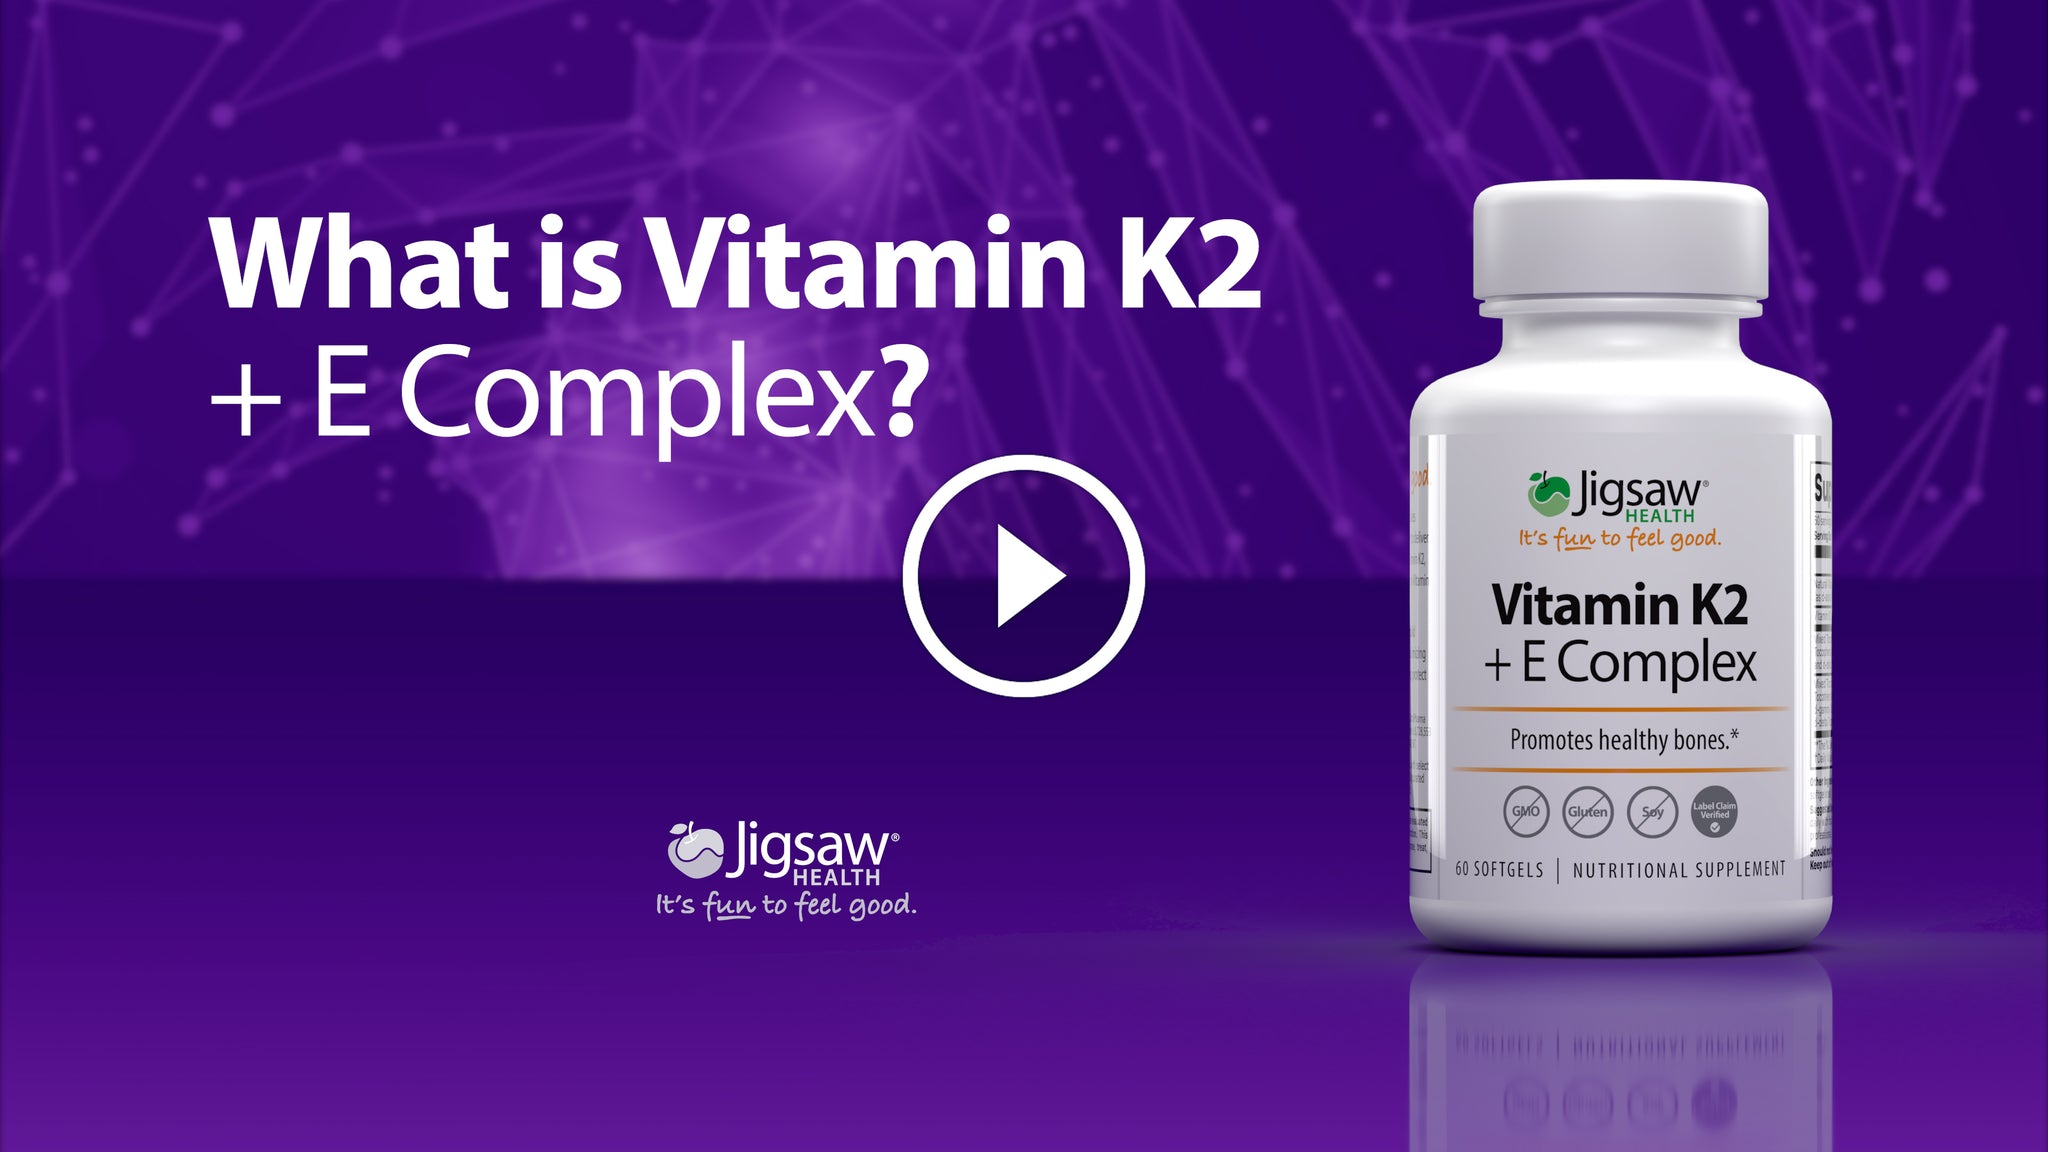 What is Vitamin K2 + E Complex?